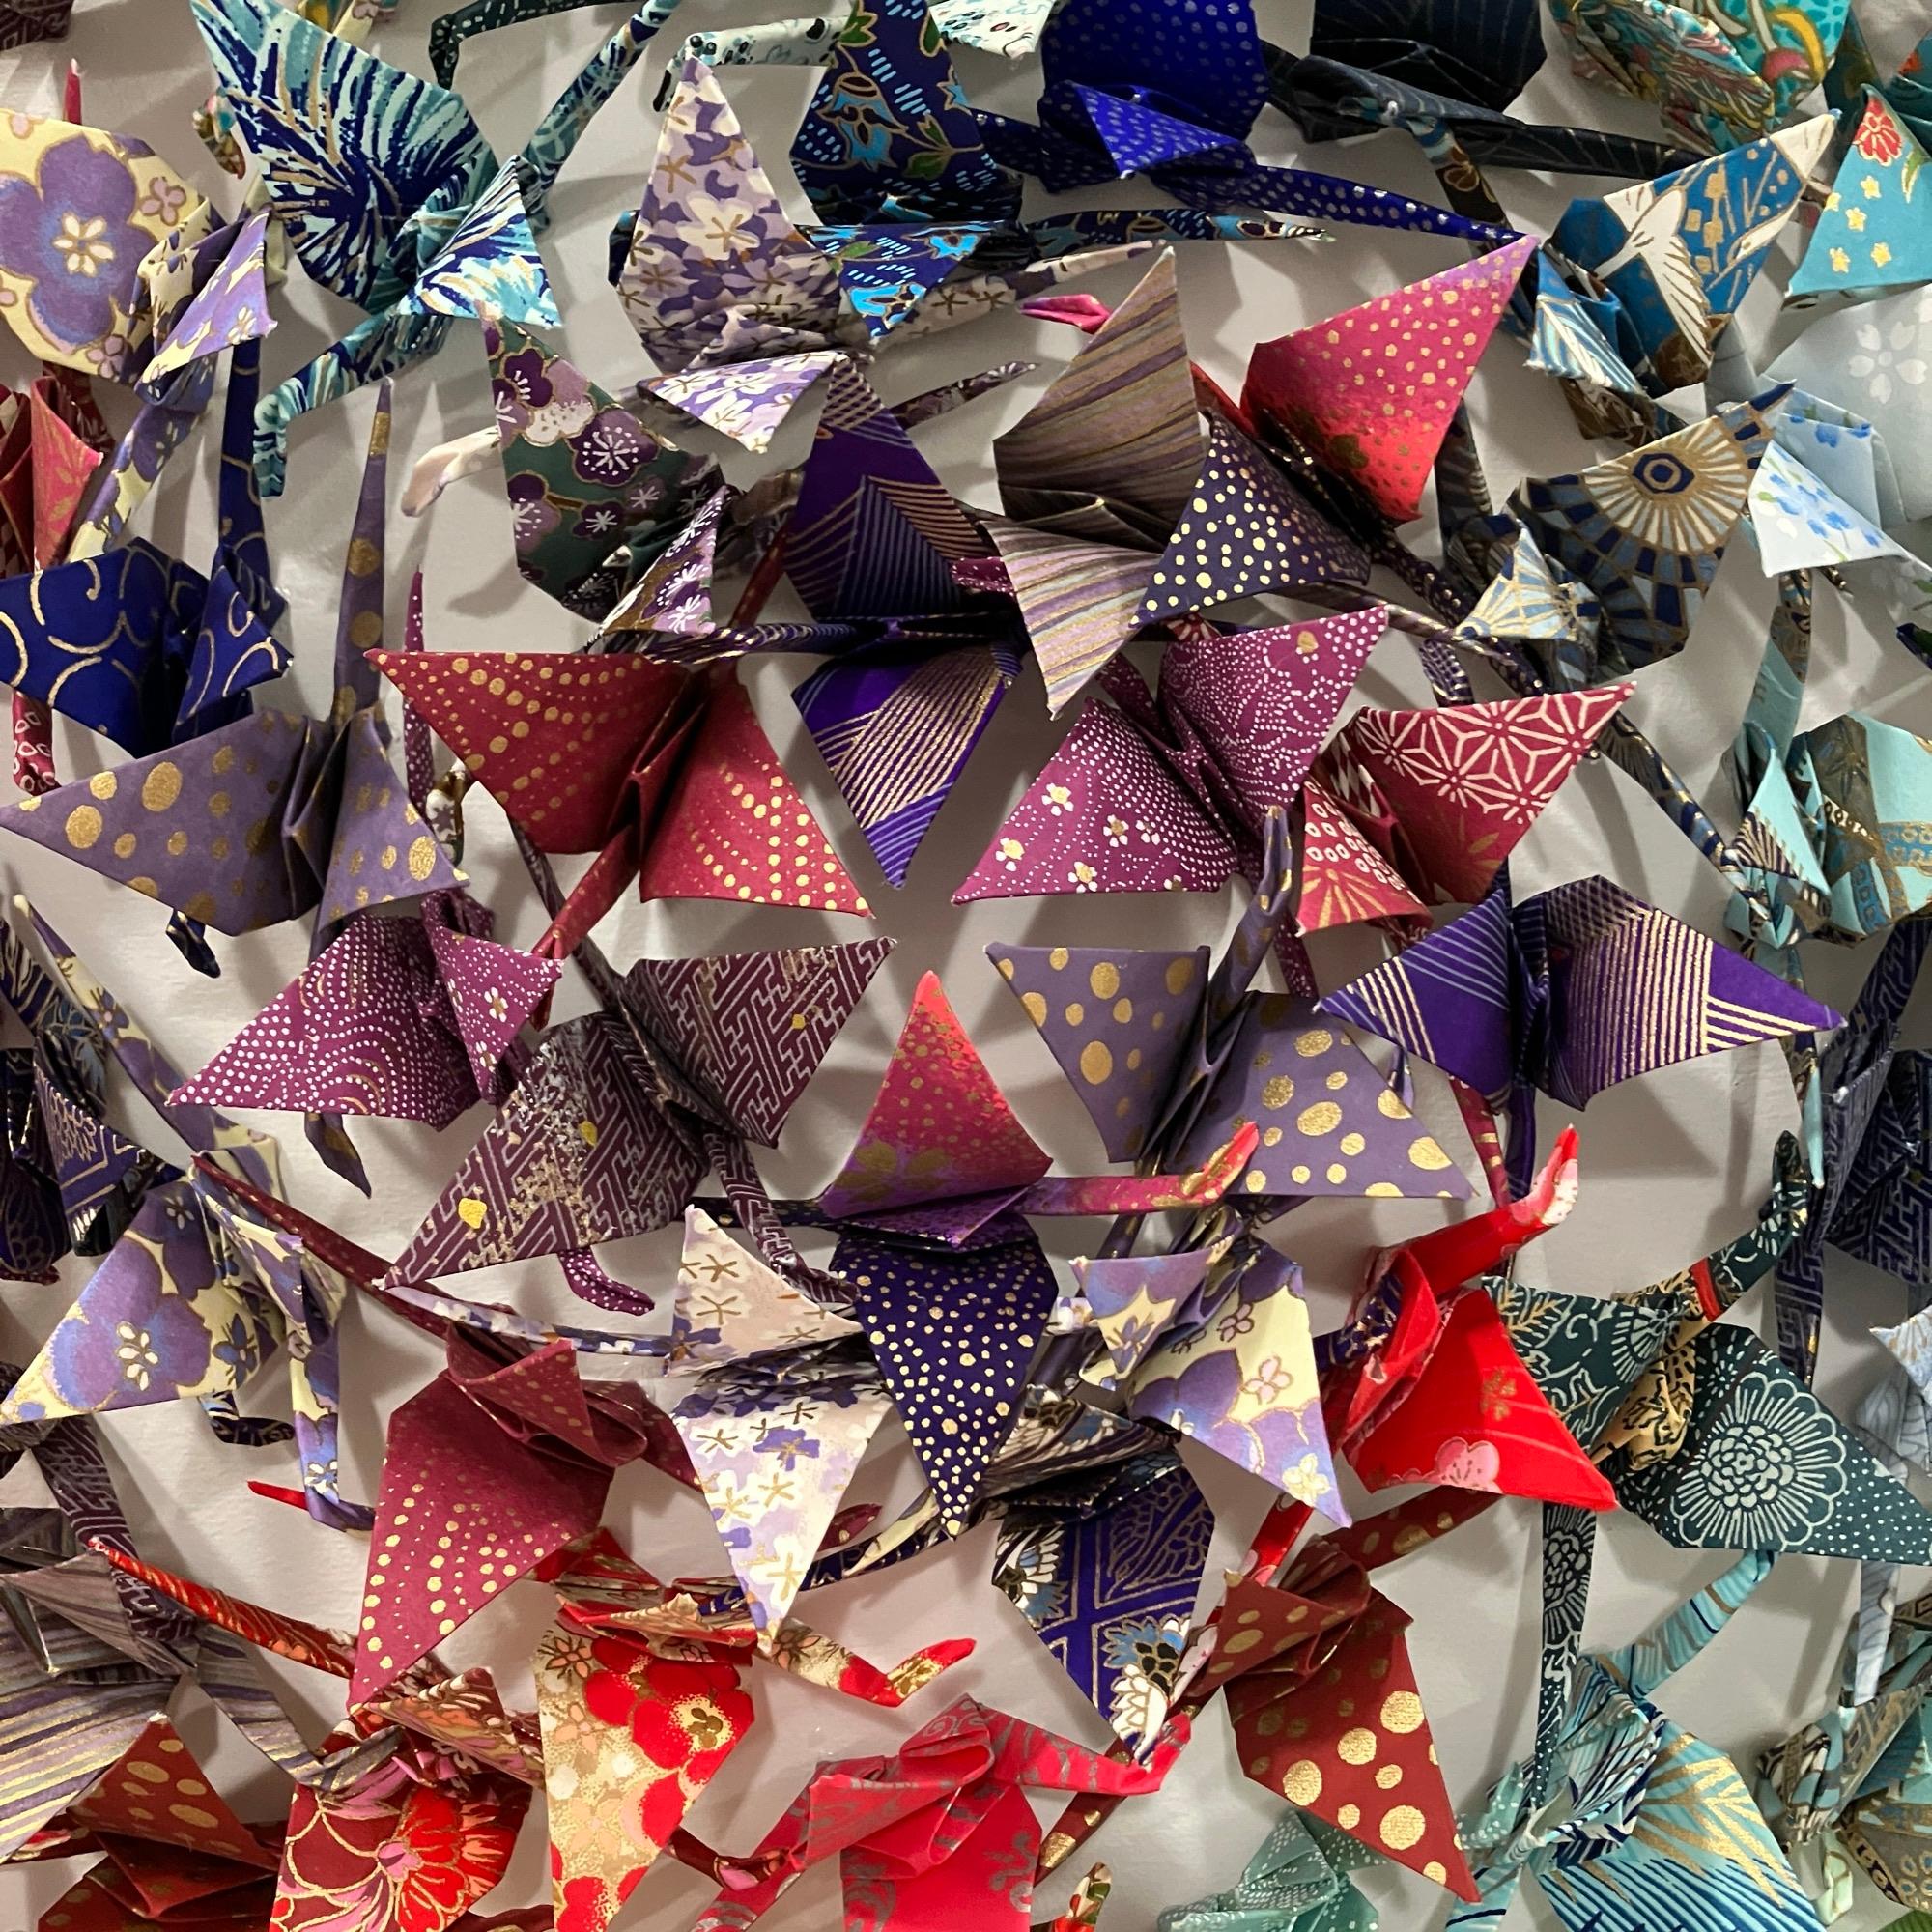 Cette pièce d'origami unique présente des centaines de grues en papier chiyogami pliées à la main, montées avec précision sur un panneau de bois et encadrées dans une élégante boîte d'ombrage en acrylique.

Andrew Wang explore de grands voyages à